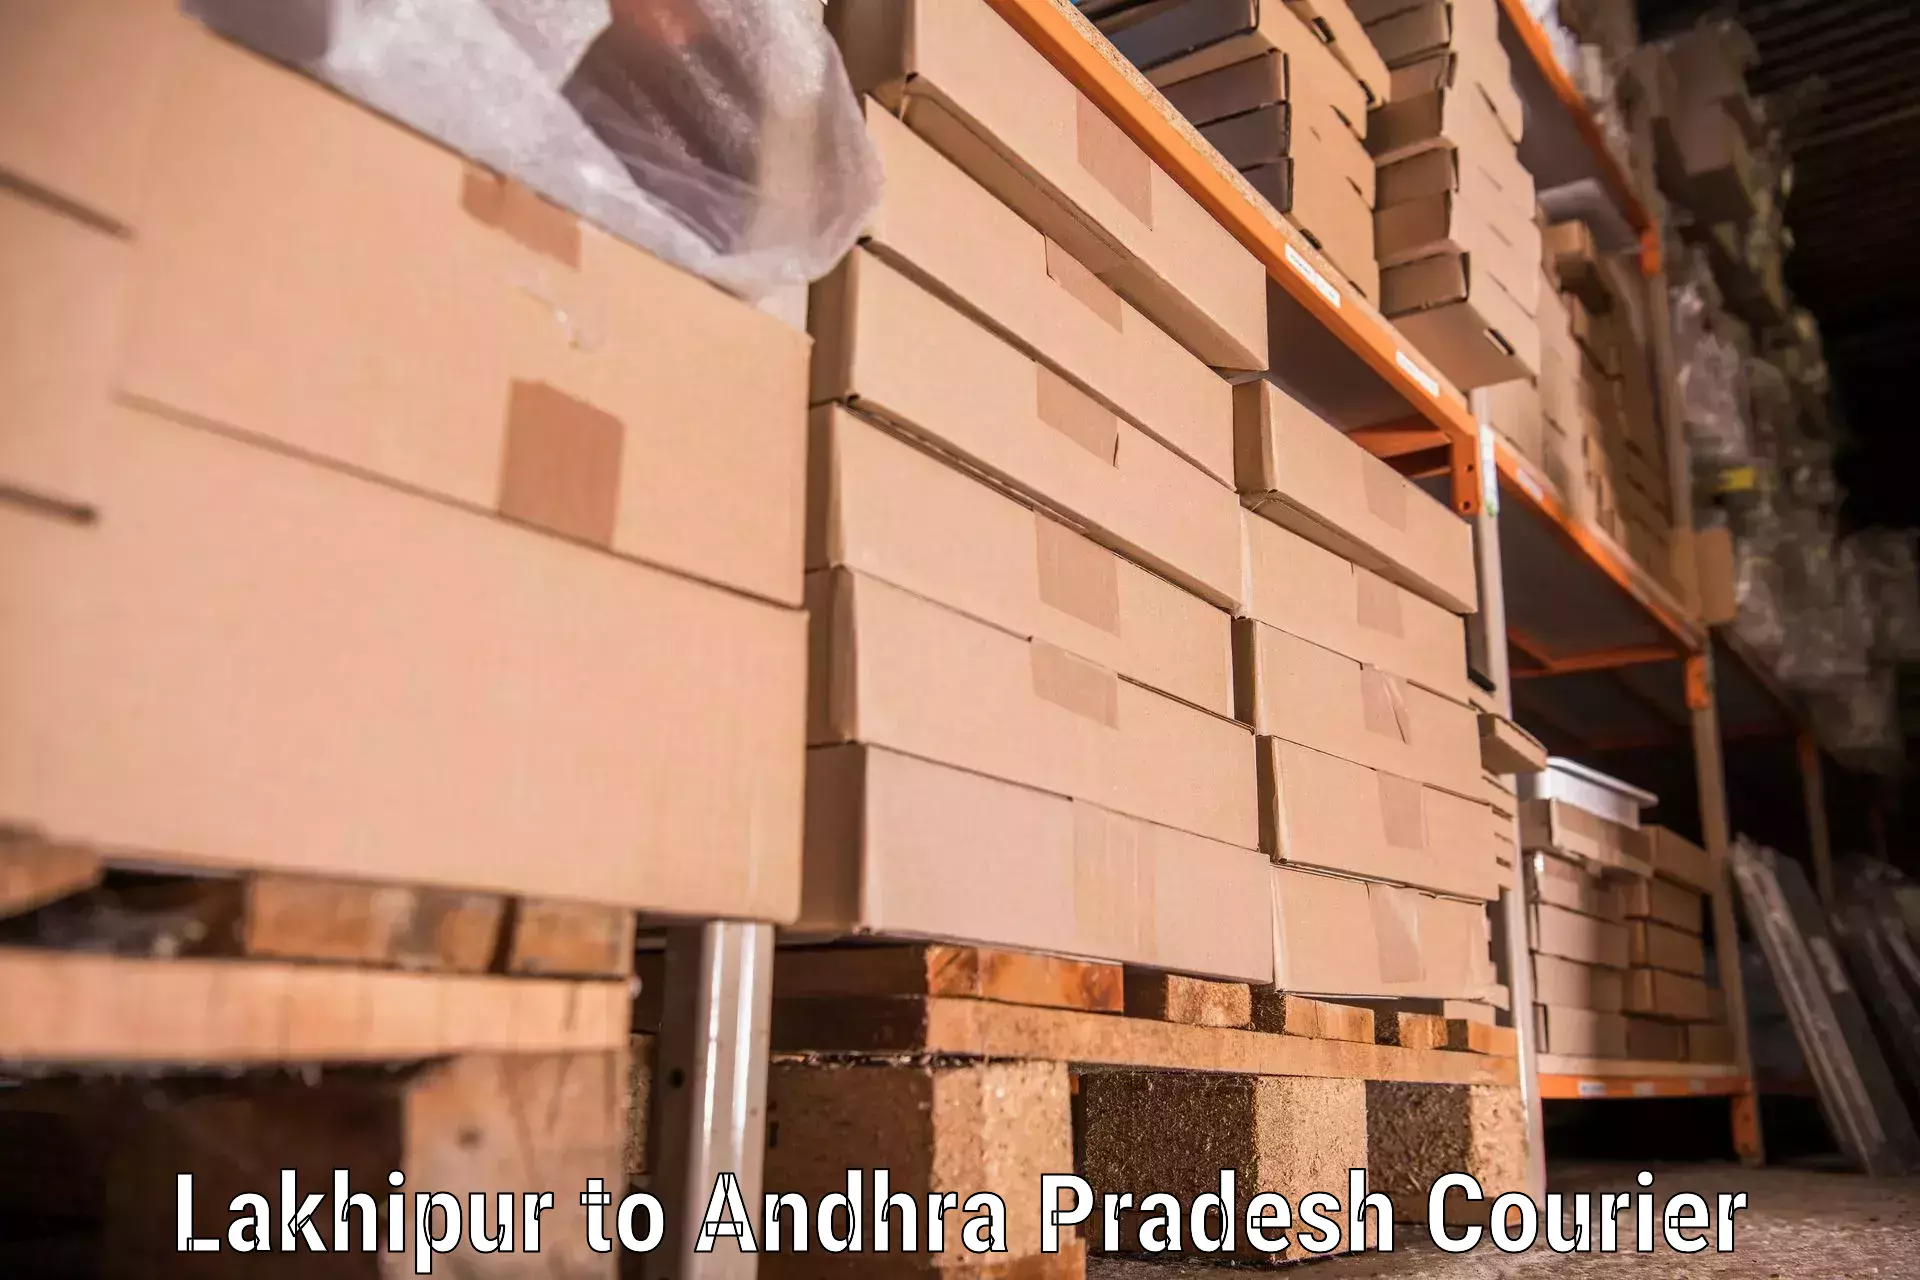 Professional moving company Lakhipur to Madakasira